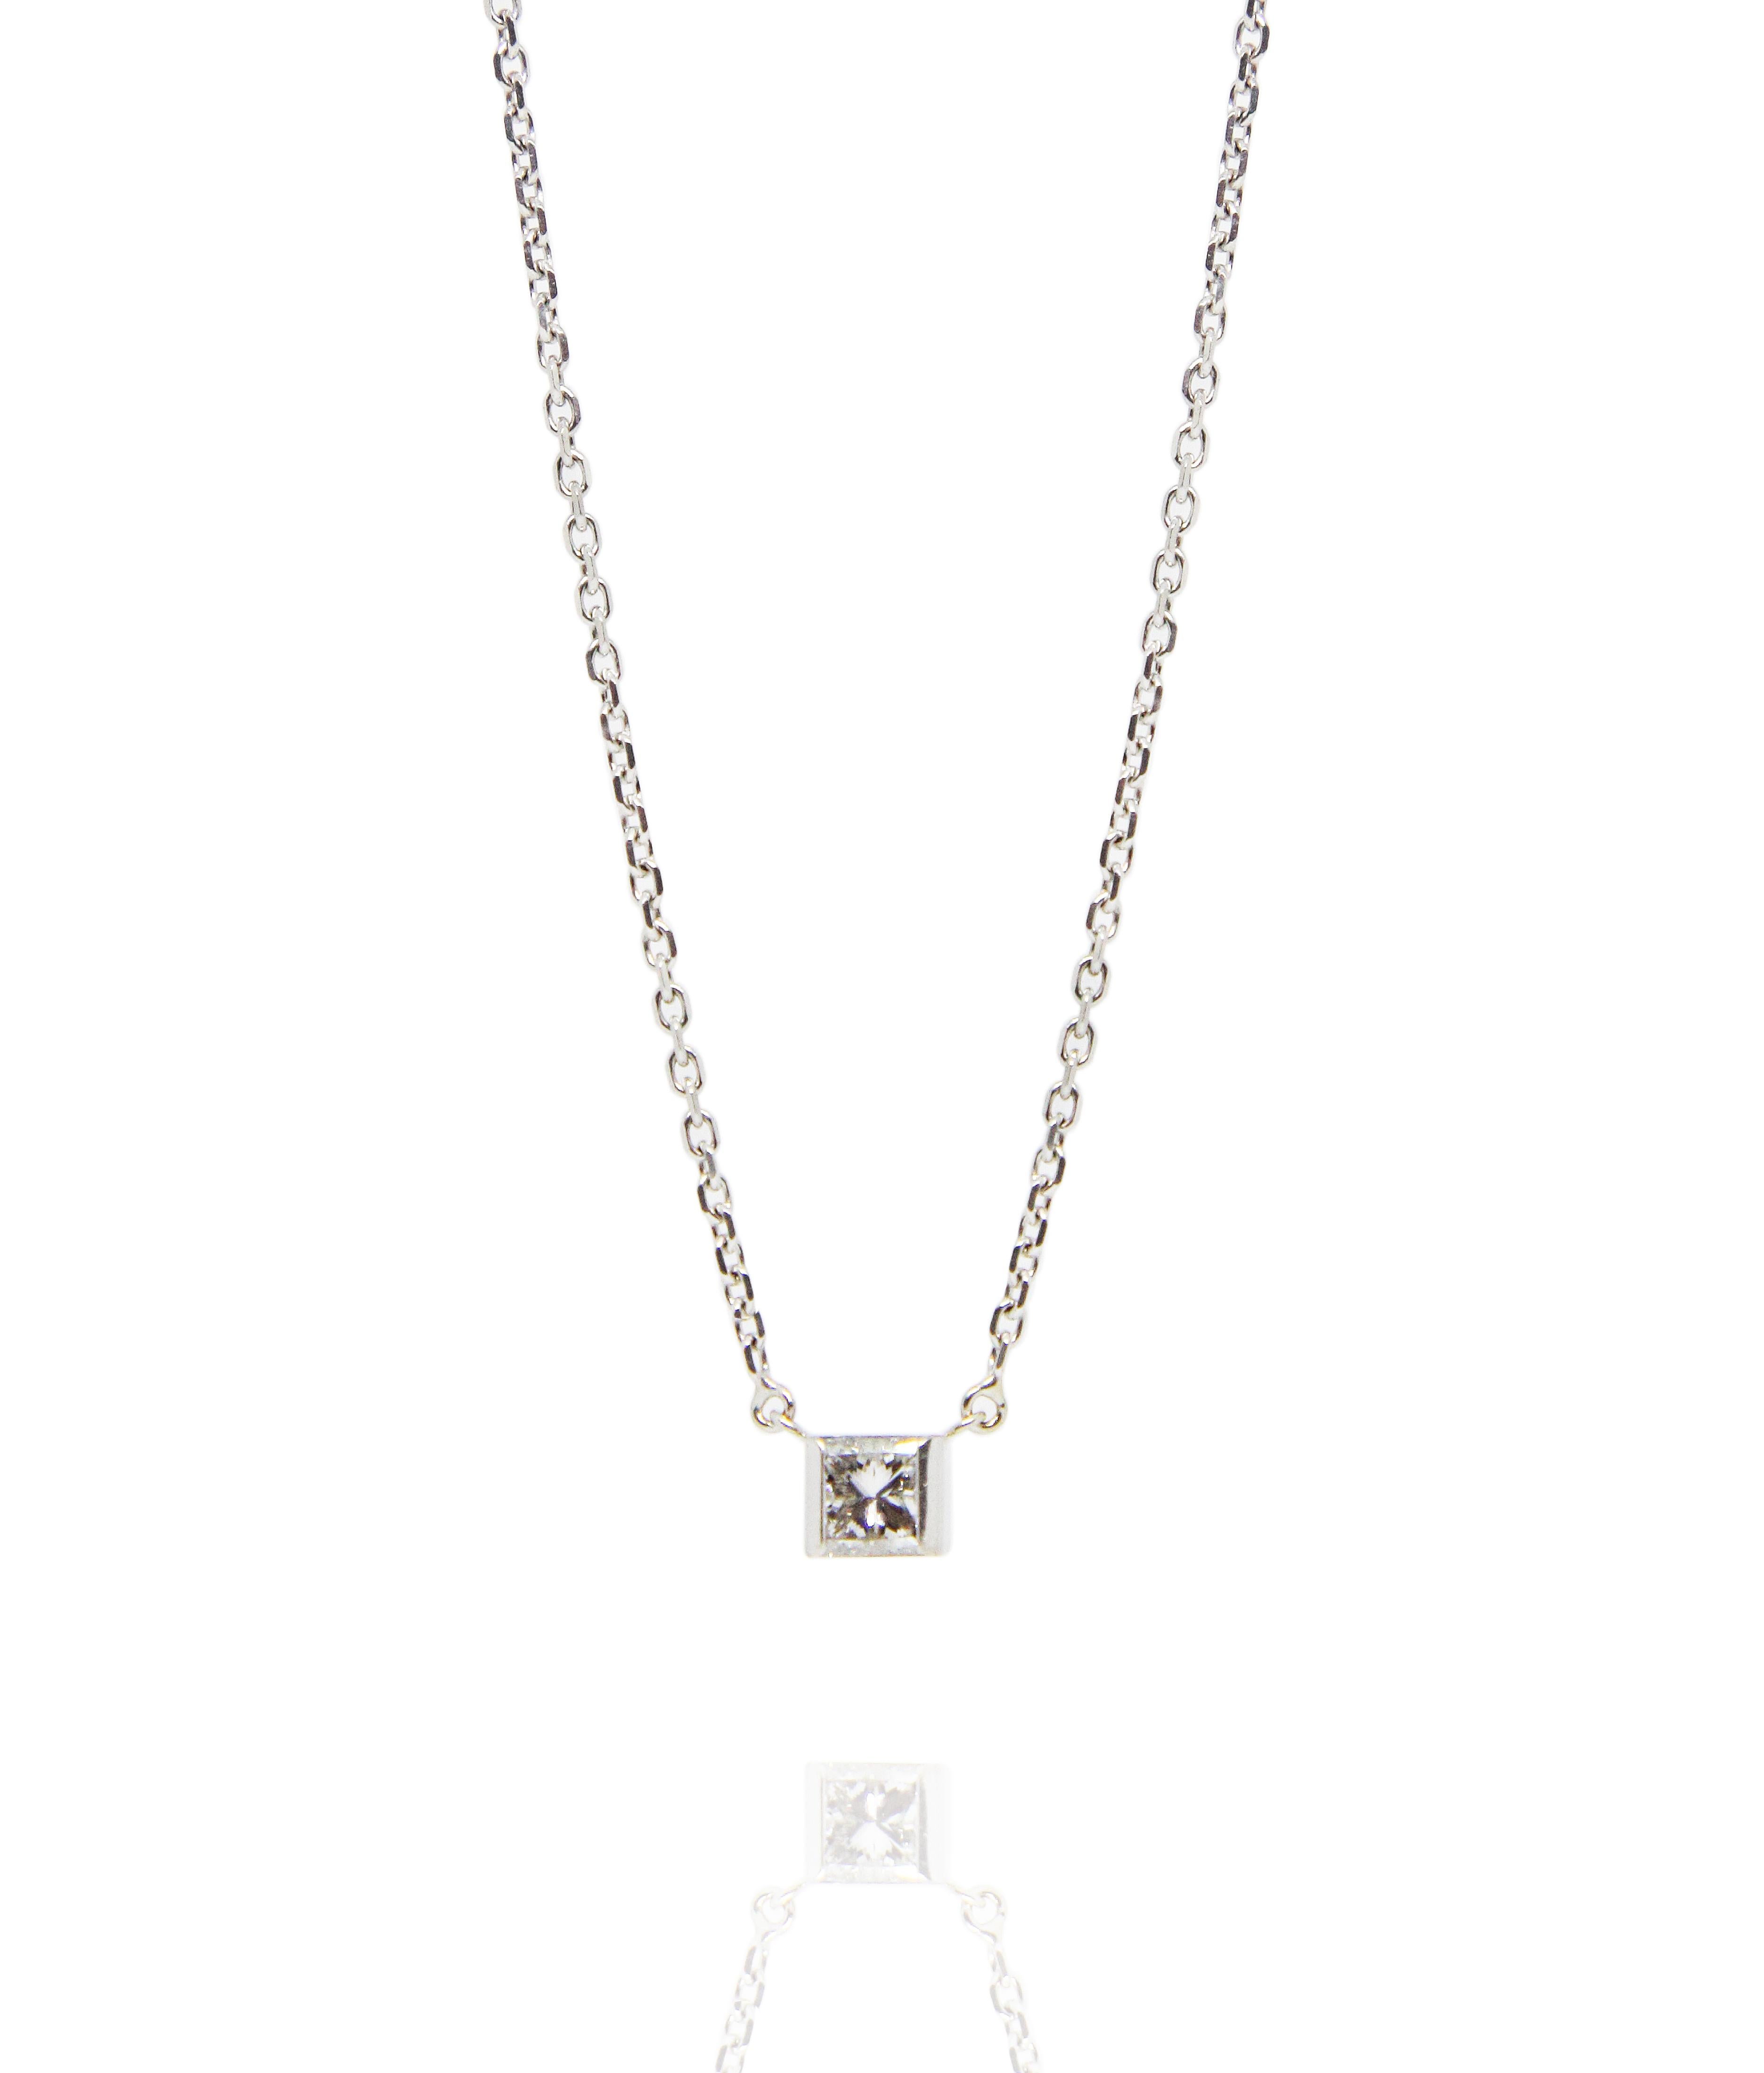 Rare collier de diamants en or blanc de Cartier
Collier à chaîne en or blanc 18K de Cartier avec pendentif fixe 
1 diamant solitaire 0,7ct en taille princesse
Logo CC de Cartier au dos
